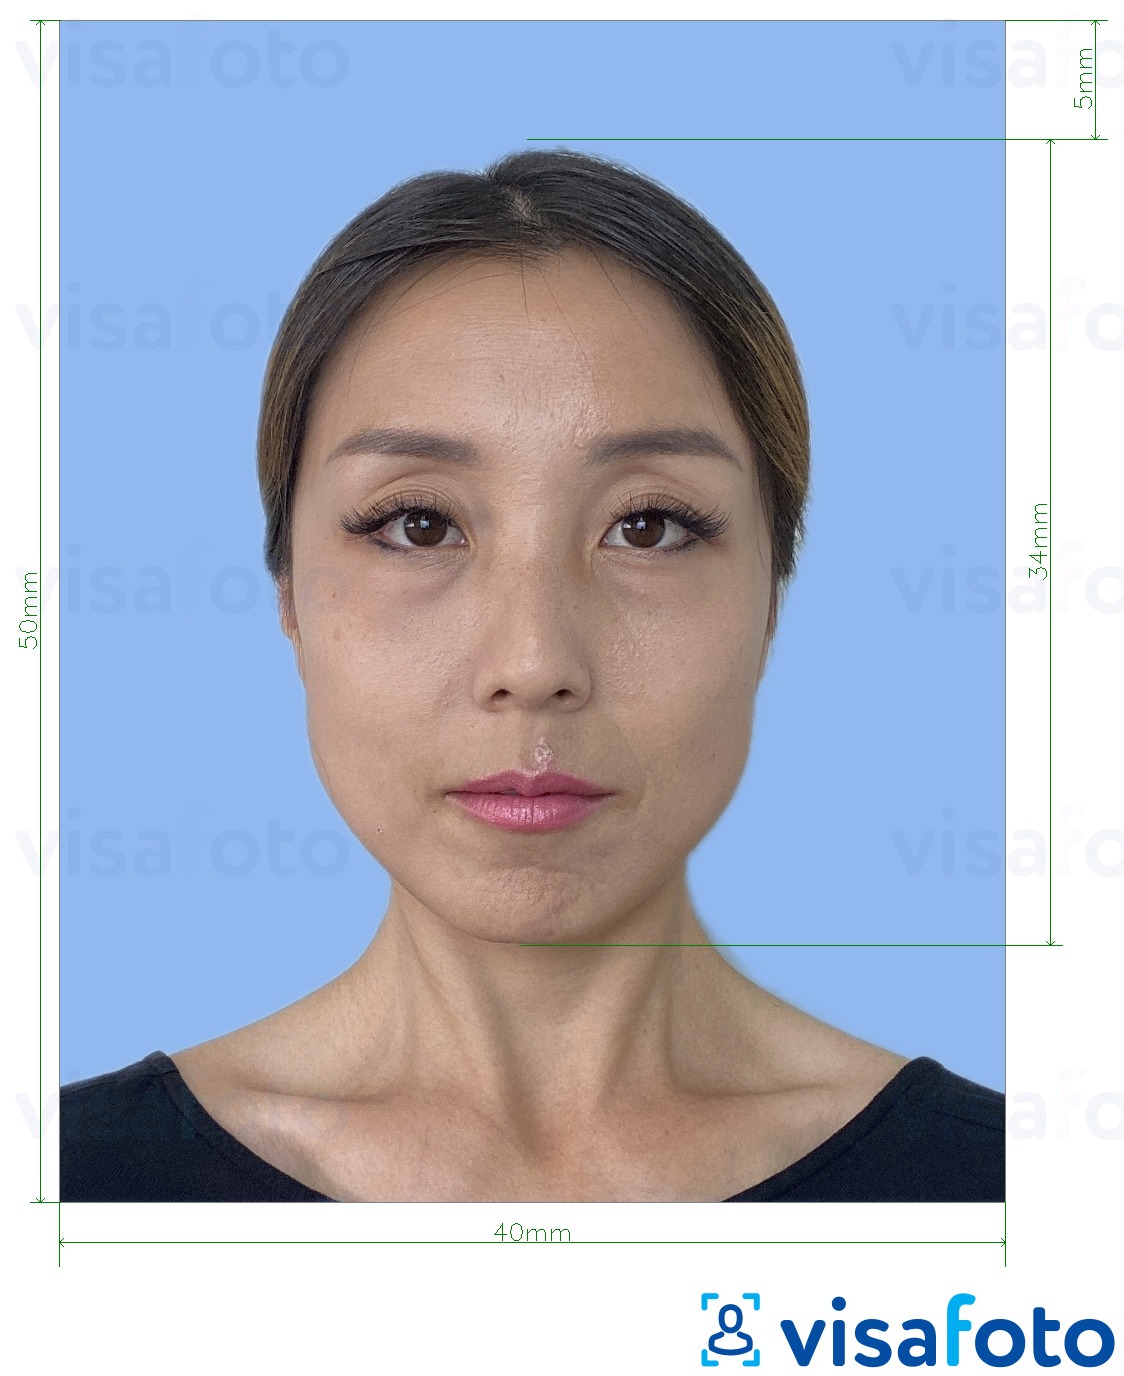 Voorbeeld van foto voor Japans buitenlands rijbewijs 4x5 cm met exacte maatspecificatie